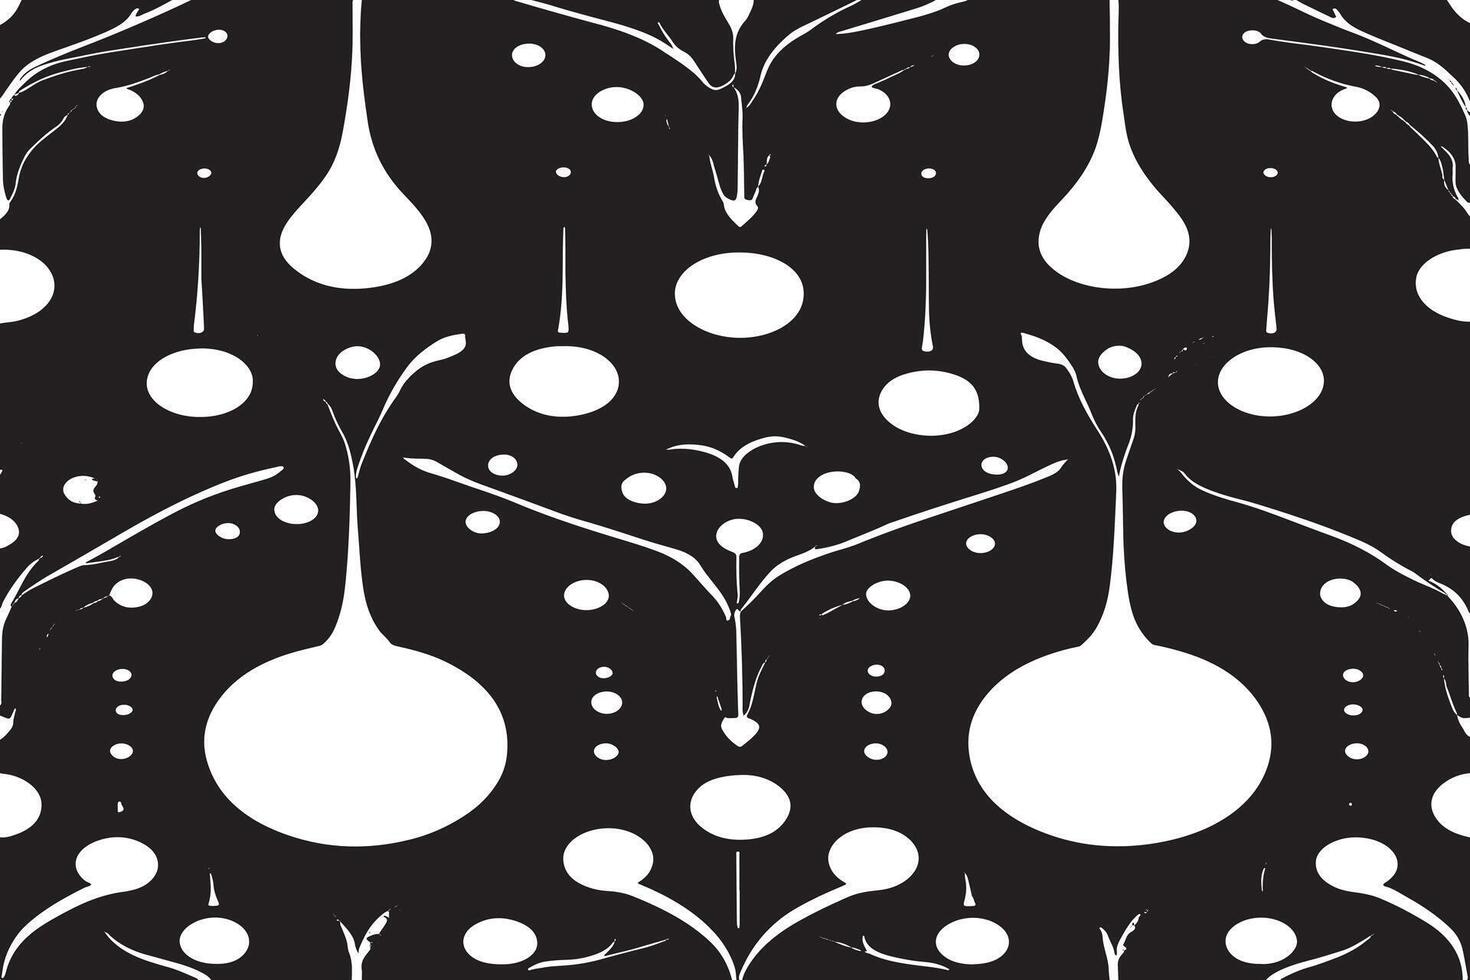 svart och vit sömlös mönster bild för bakgrund eller textur, eps 10 vektor